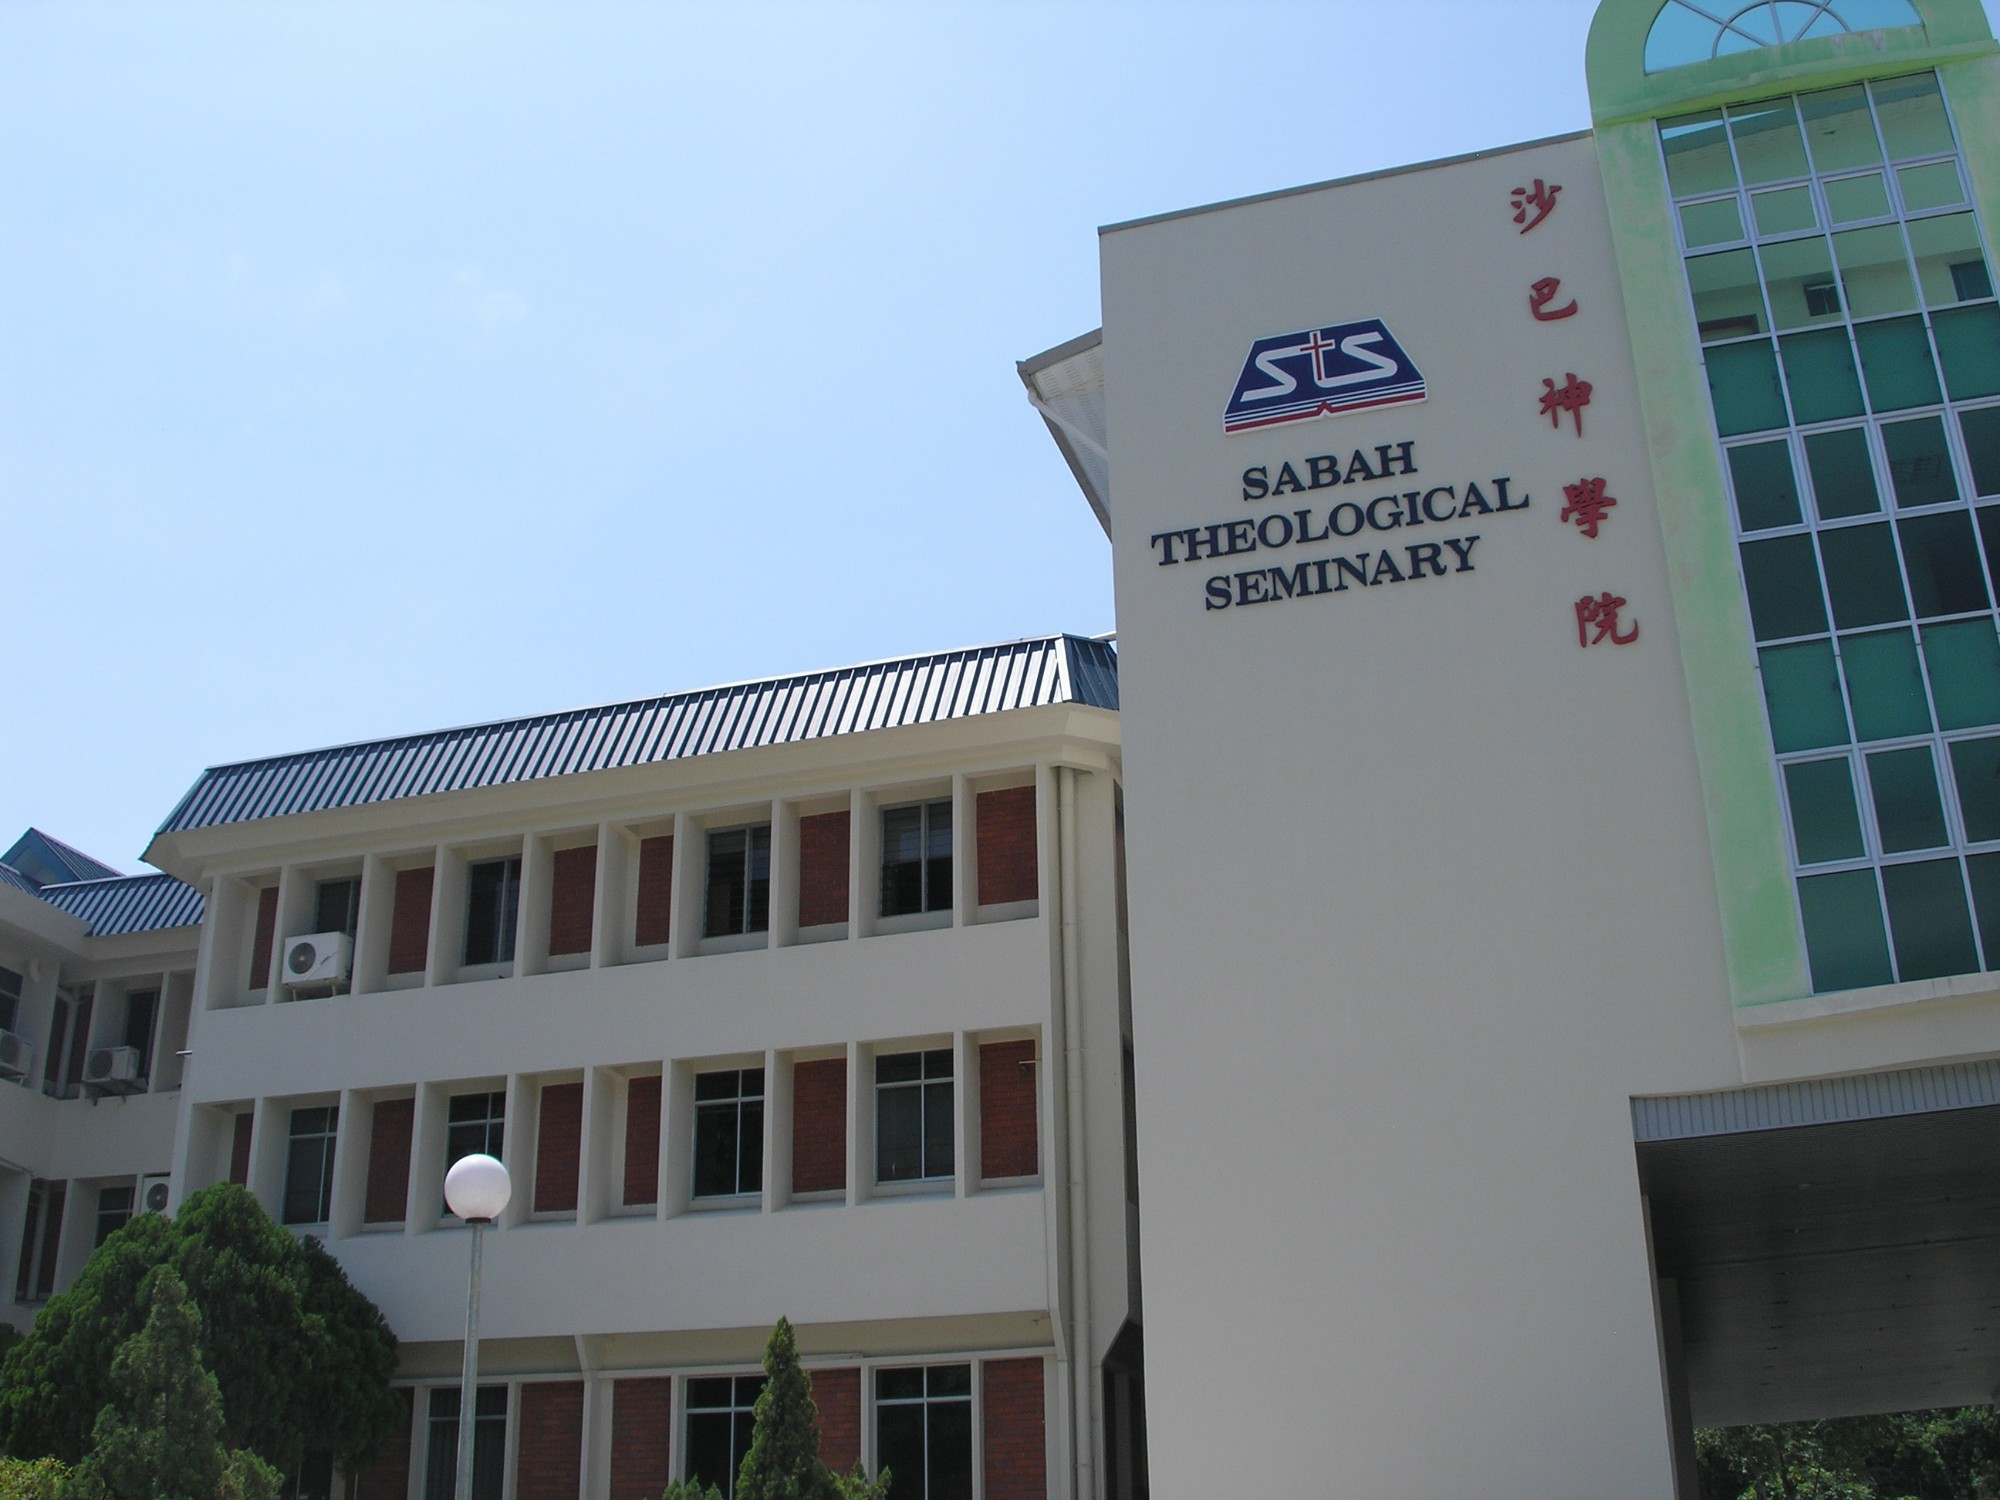 Sabah Theological Seminary, Malaysia